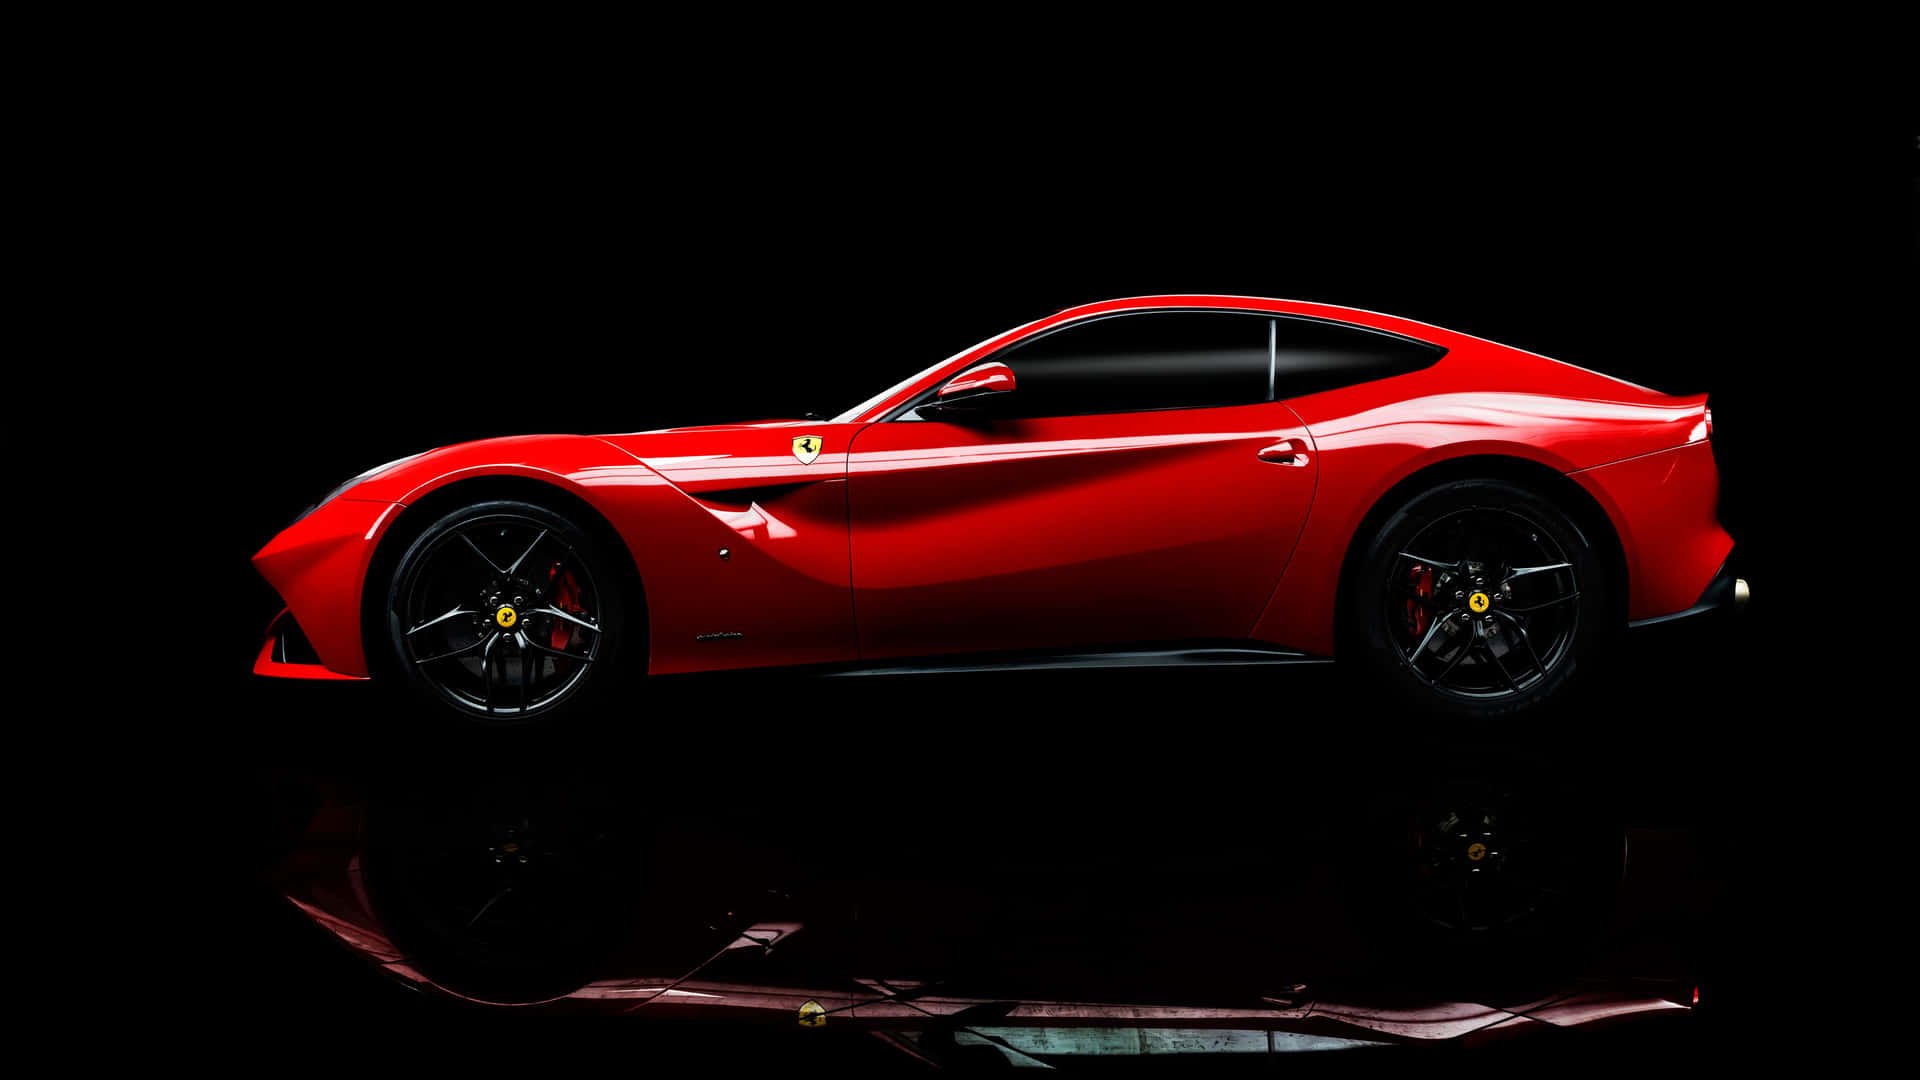 Preparatiper Un'emozionante Avventura Su Questa Ferrari.